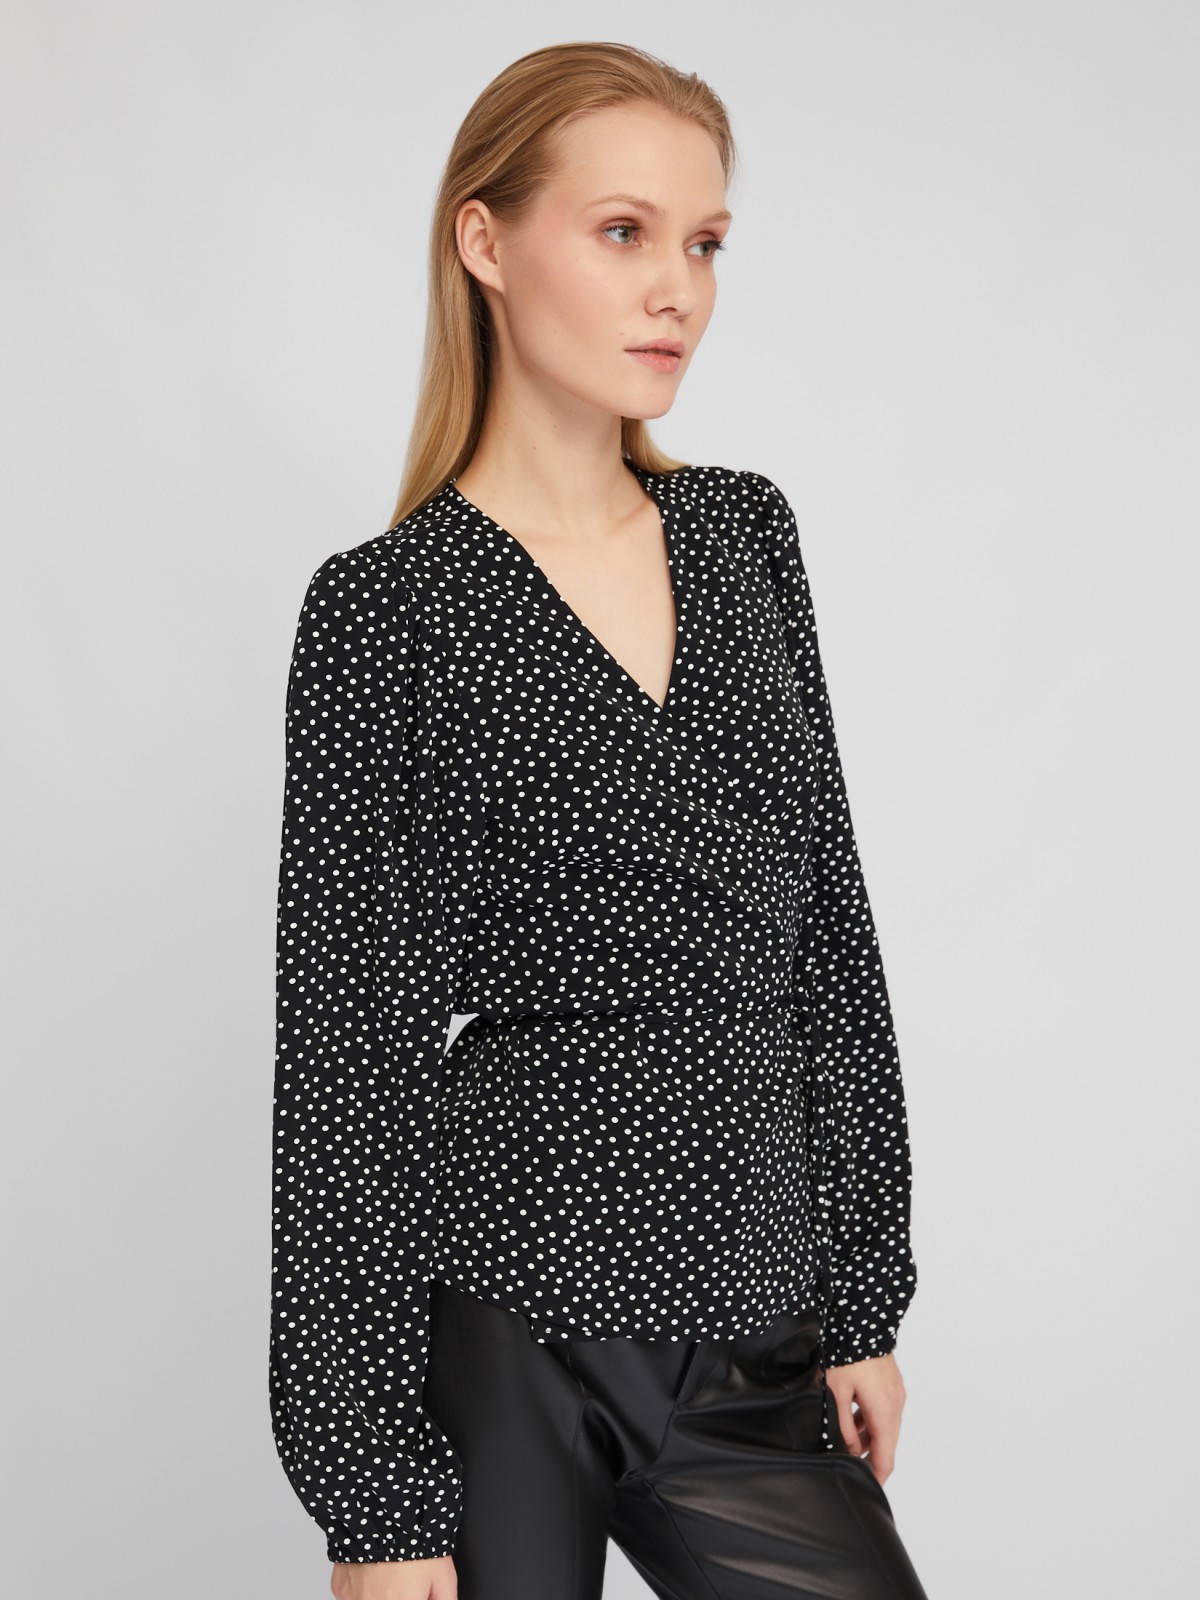 Блузка на запах с объёмным рукавом и принтом в горошек zolla 024111159191, цвет черный, размер XS - фото 5